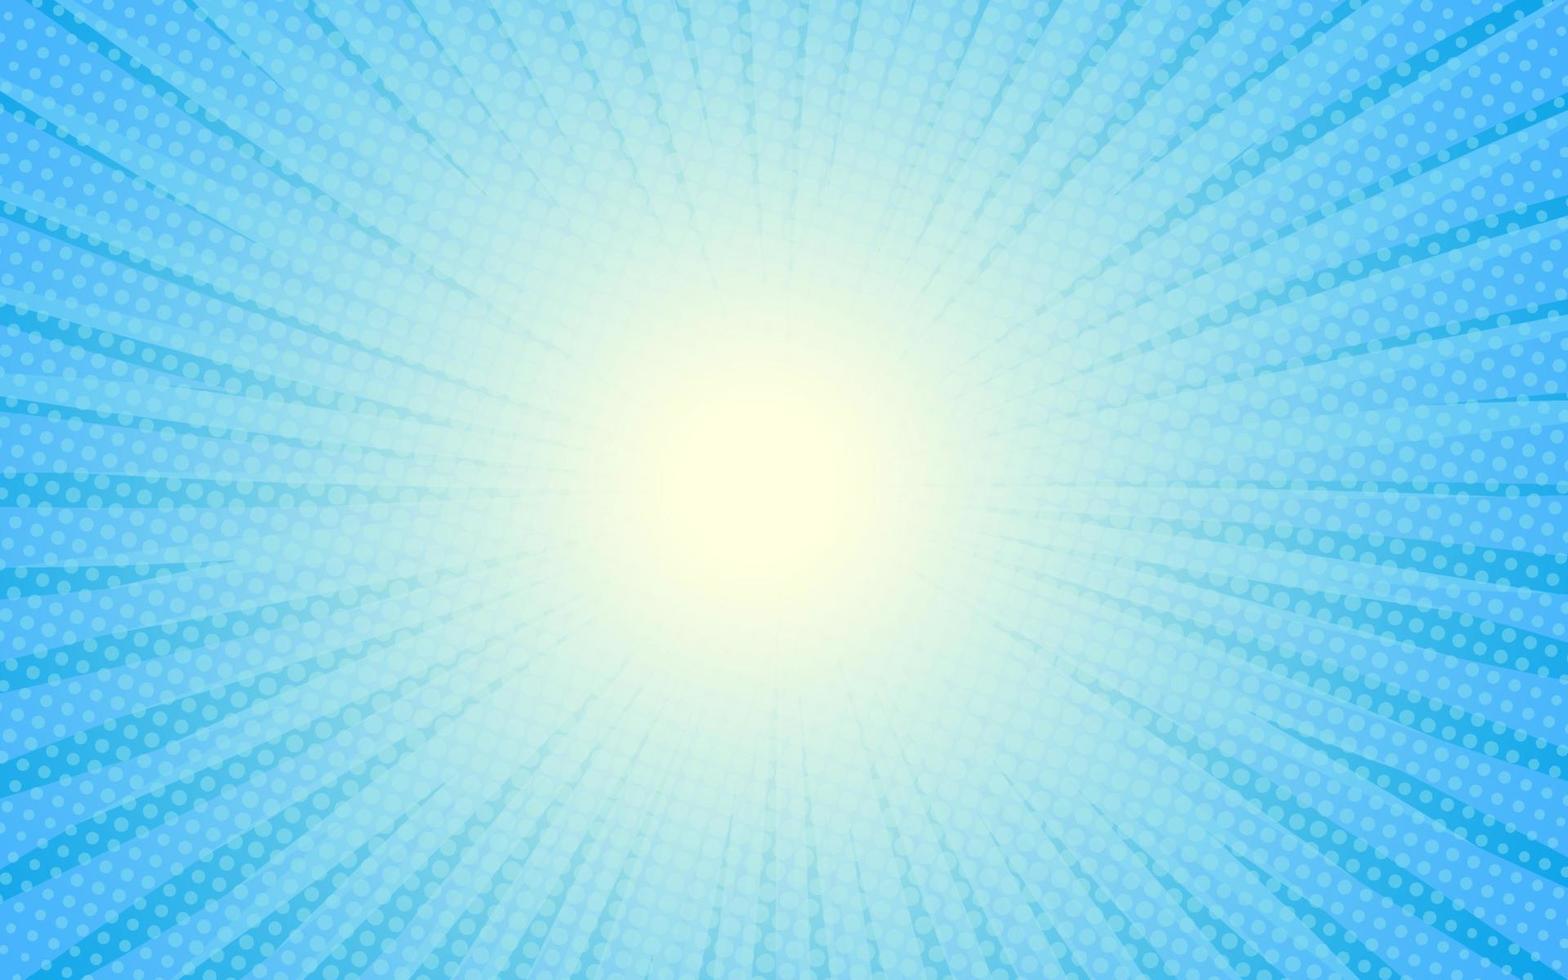 rayons de soleil style vintage rétro sur fond bleu, motif comique avec starburst et demi-teintes. effet sunburst rétro de dessin animé avec des points. des rayons. illustration vectorielle de bannière d'été. vecteur